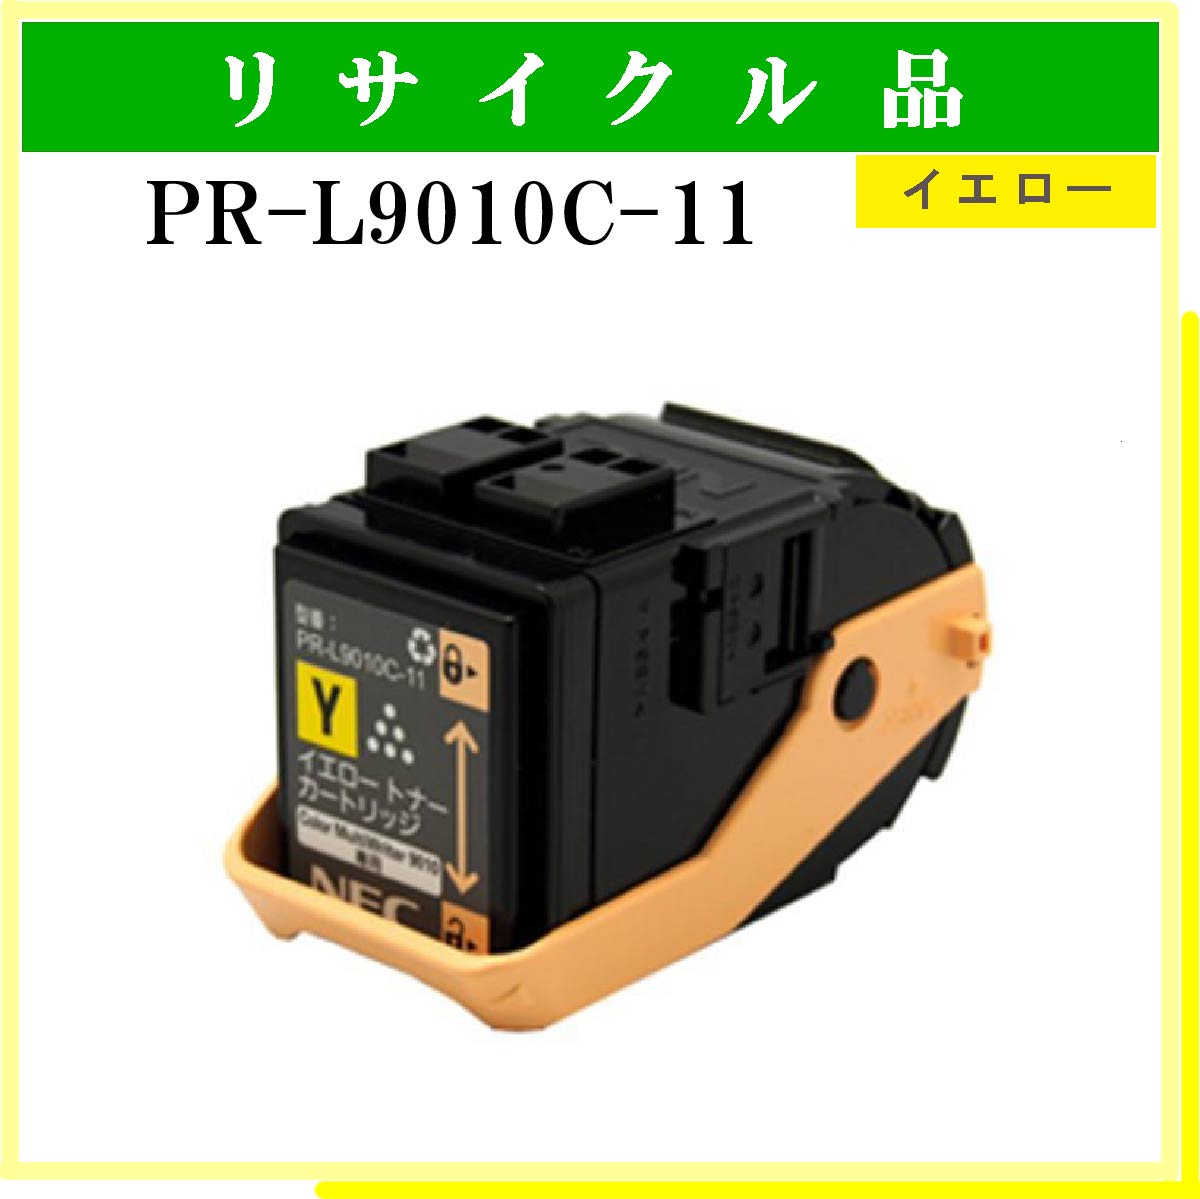 PR-L9010C-11